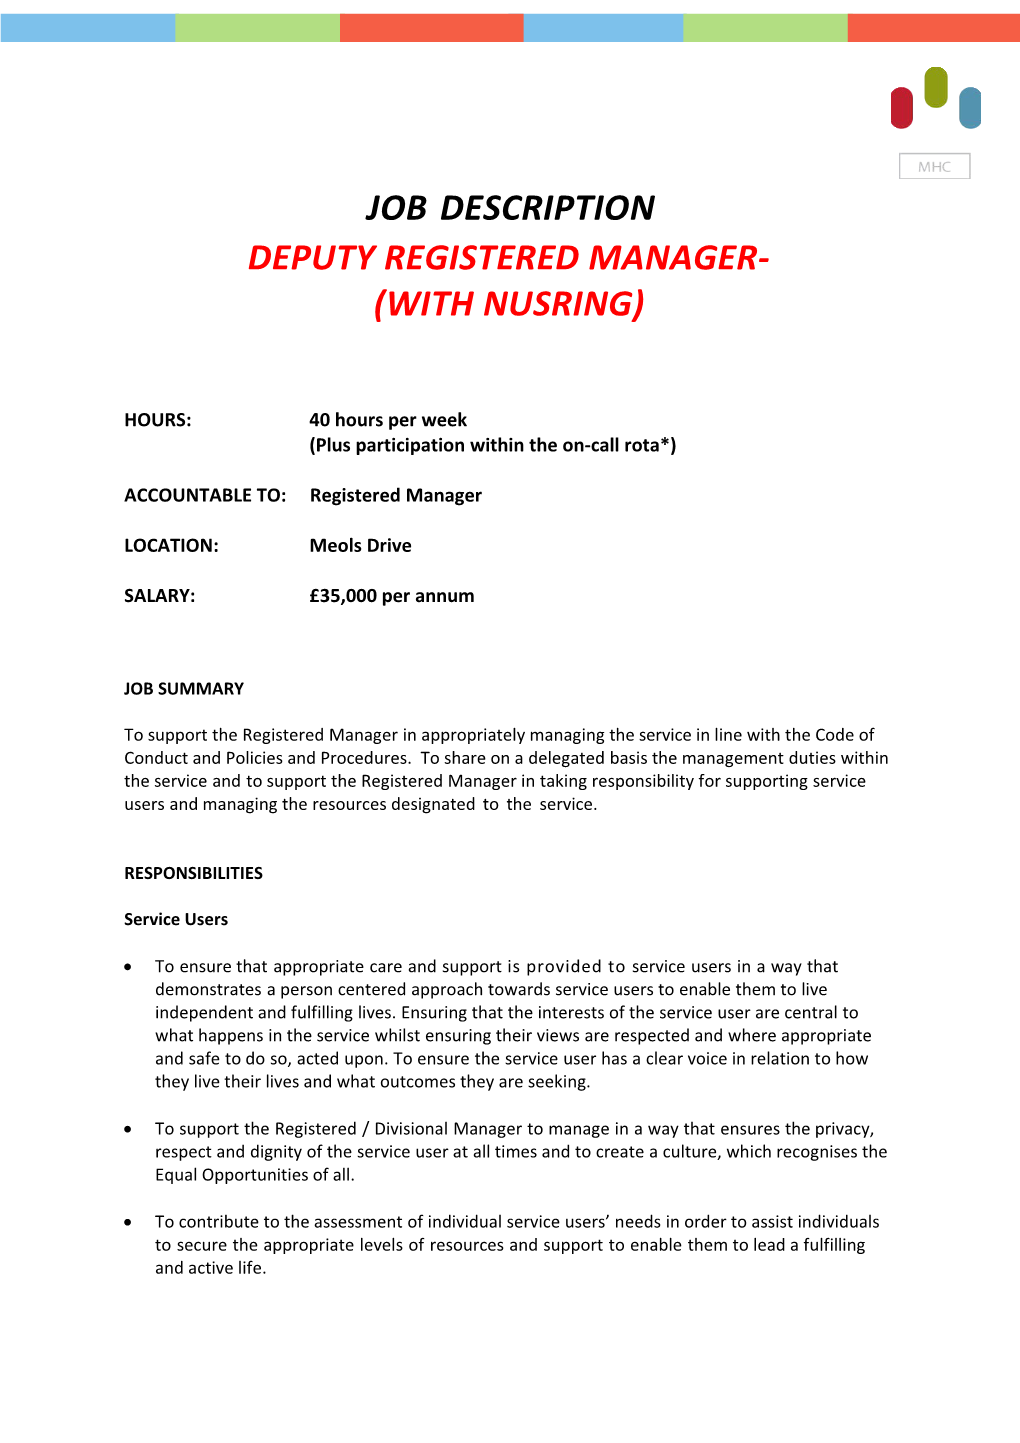 Job Description DEPUTY REGISTERED MANAGER-(WITH NUSRING)